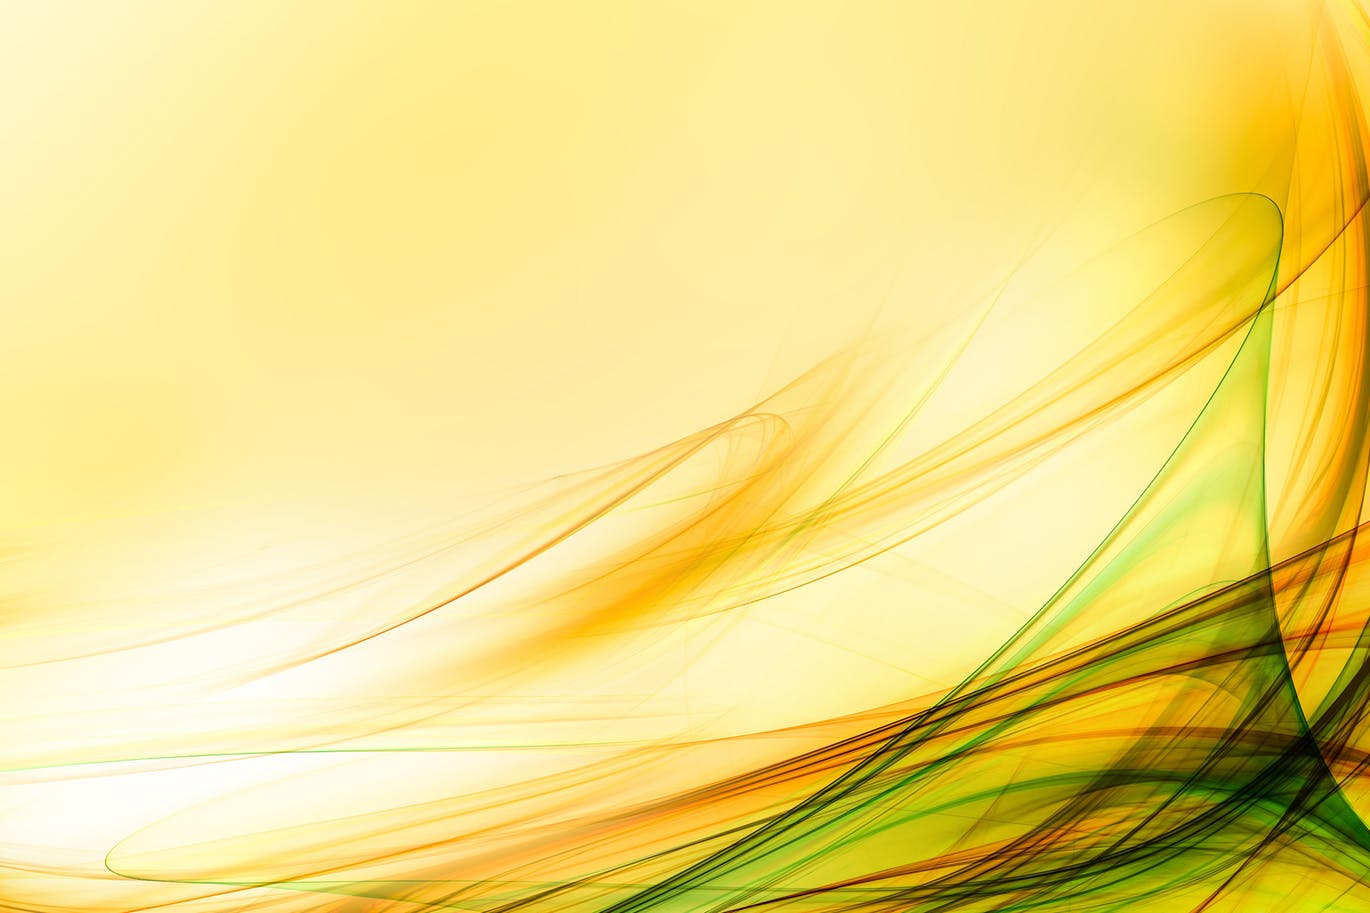 超高清抽象平滑线条黄色背景素材abstract Yellow Background 大洋岛素材